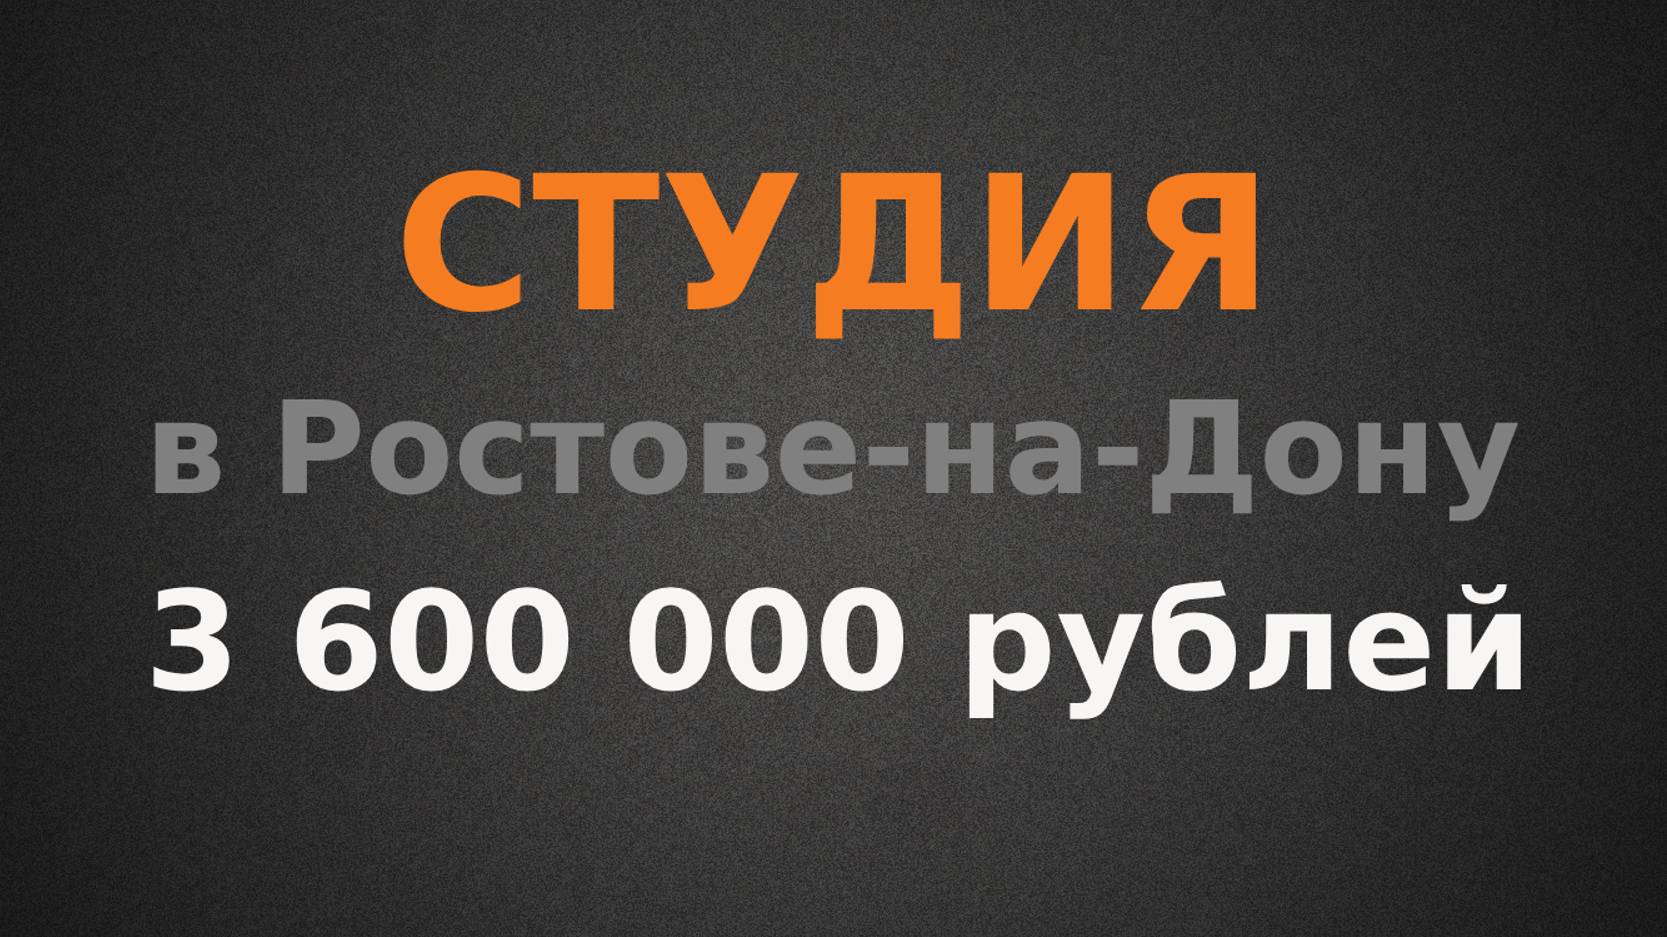 Студия в Ростове-на-Дону. Куда вложить 3 600 000?